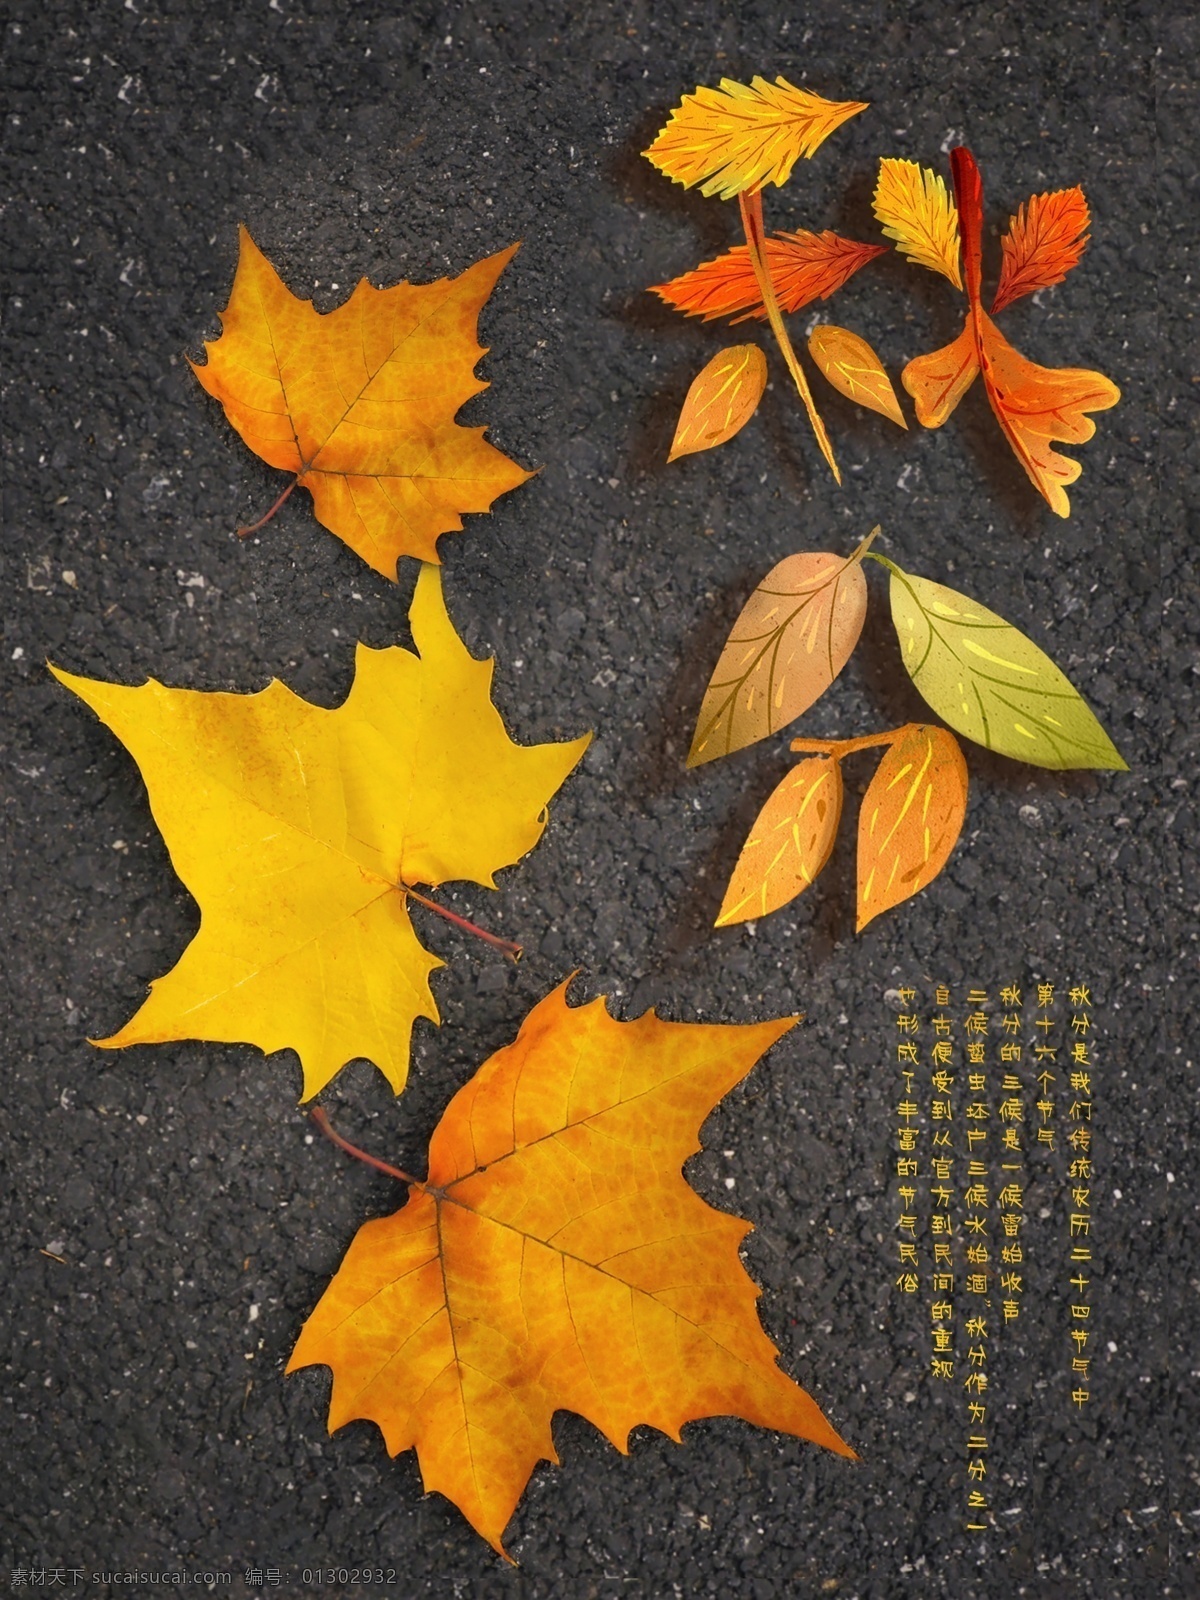 中国 传统 二十四节气 秋分 落叶 海报 枫叶 节气 节日海报 立秋 秋 amp 四季